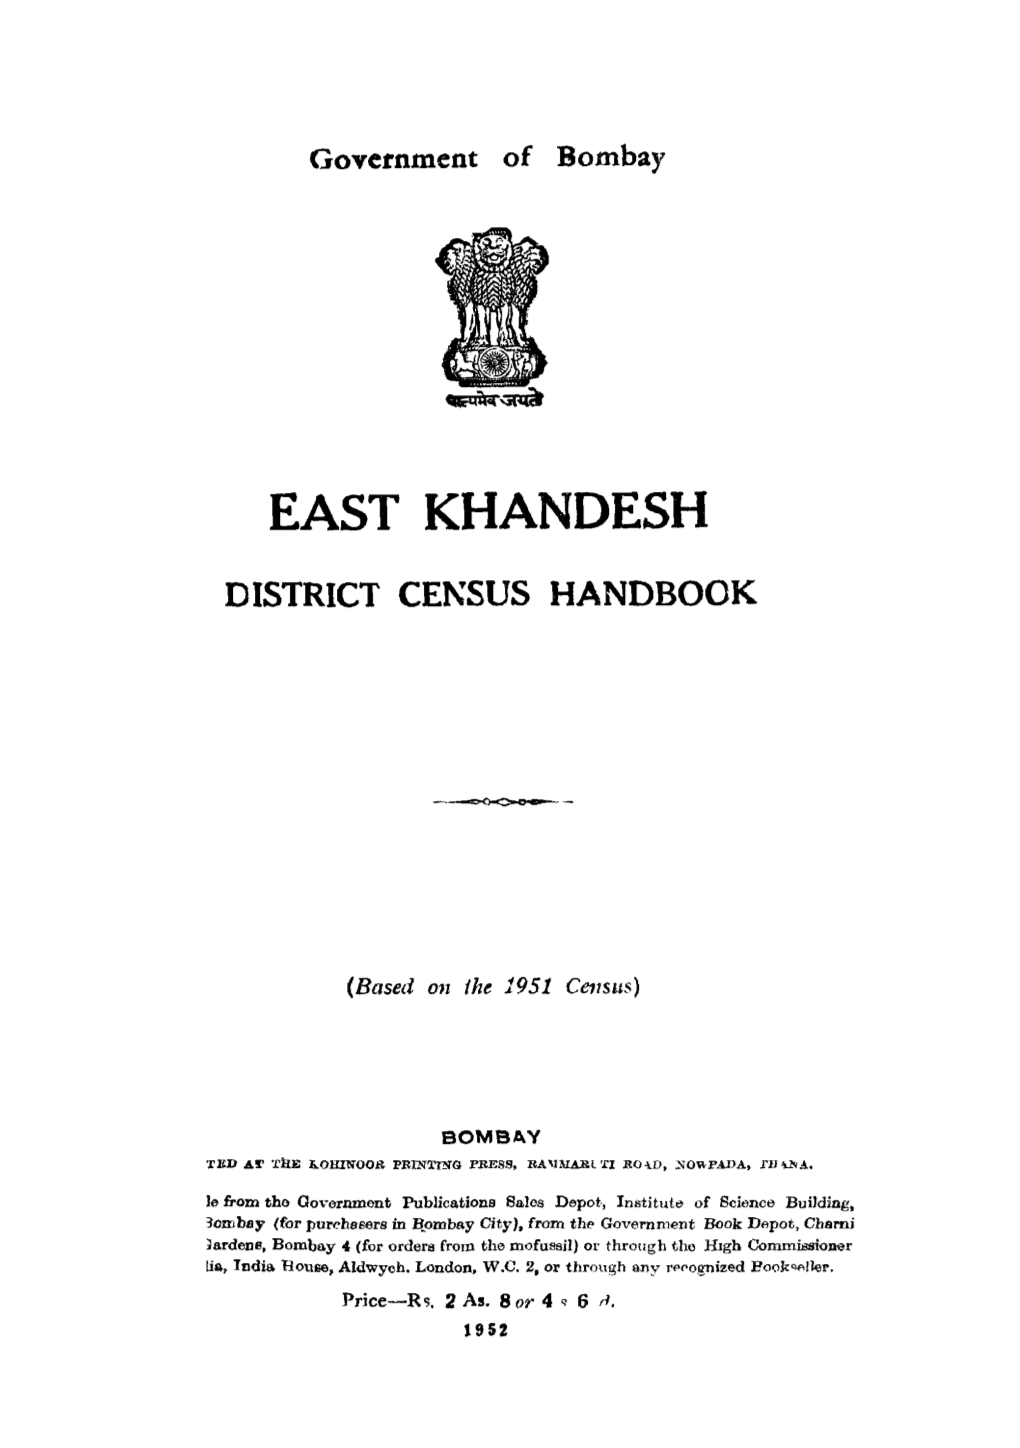 East Khandesh